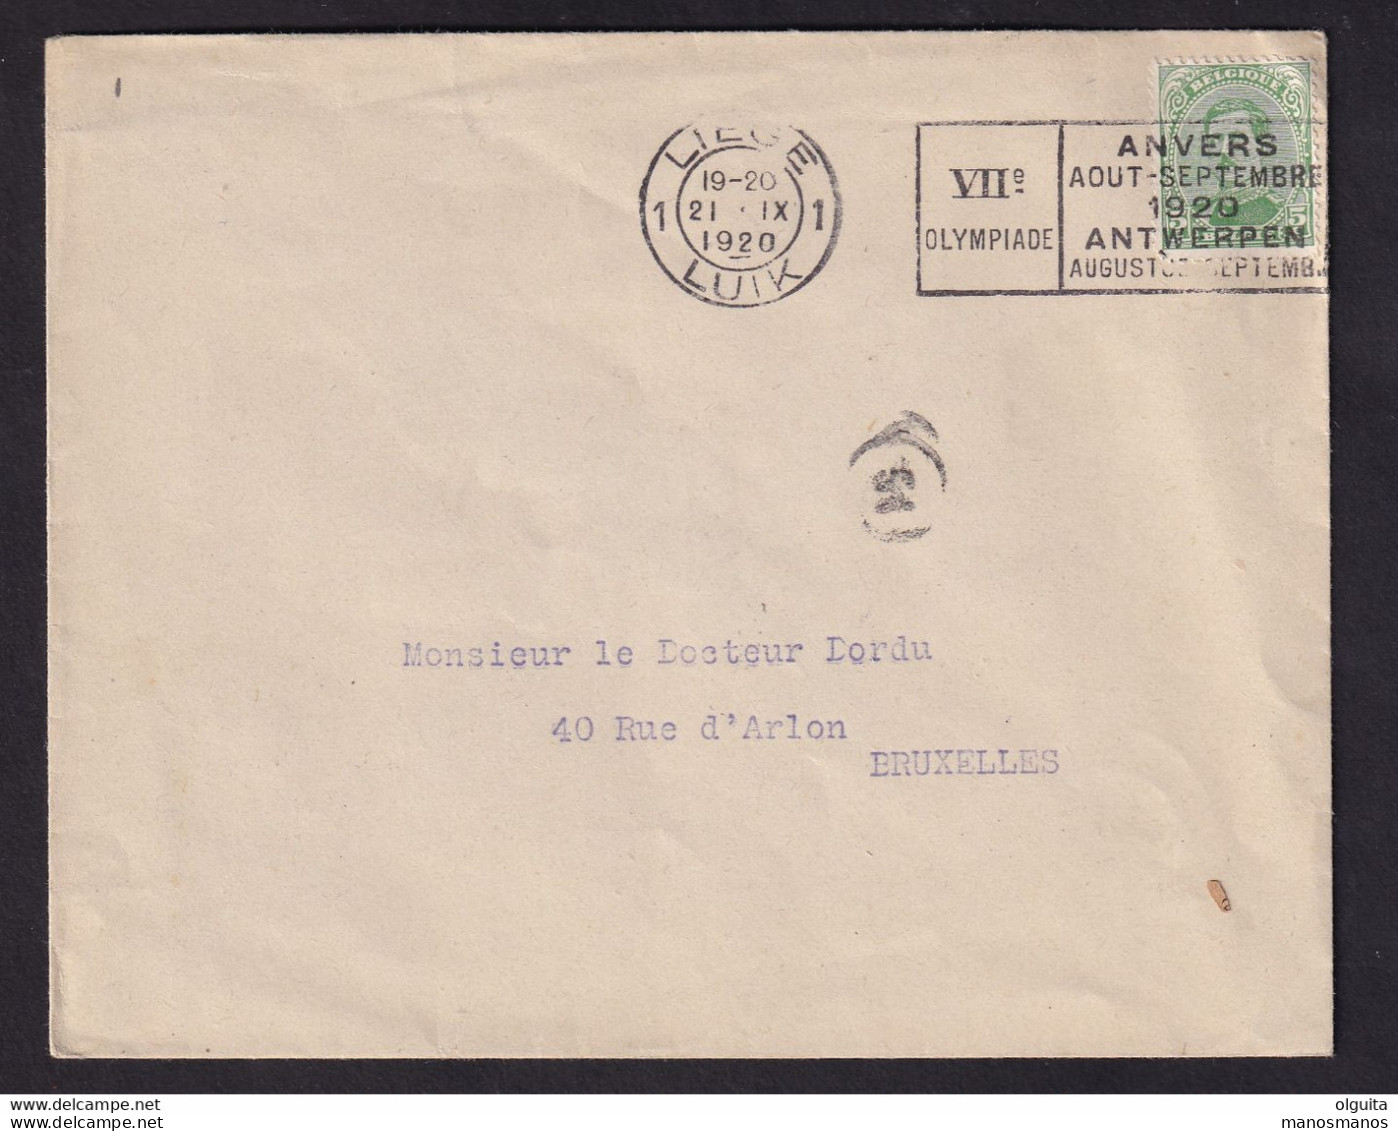 DDCC 348 -- LES IMPRIMES - Enveloppe Ouverte TP Albert 5 C - Cachet Mécanique LIEGE 1 Jeux Olympiques 1920 - Estate 1920: Anversa